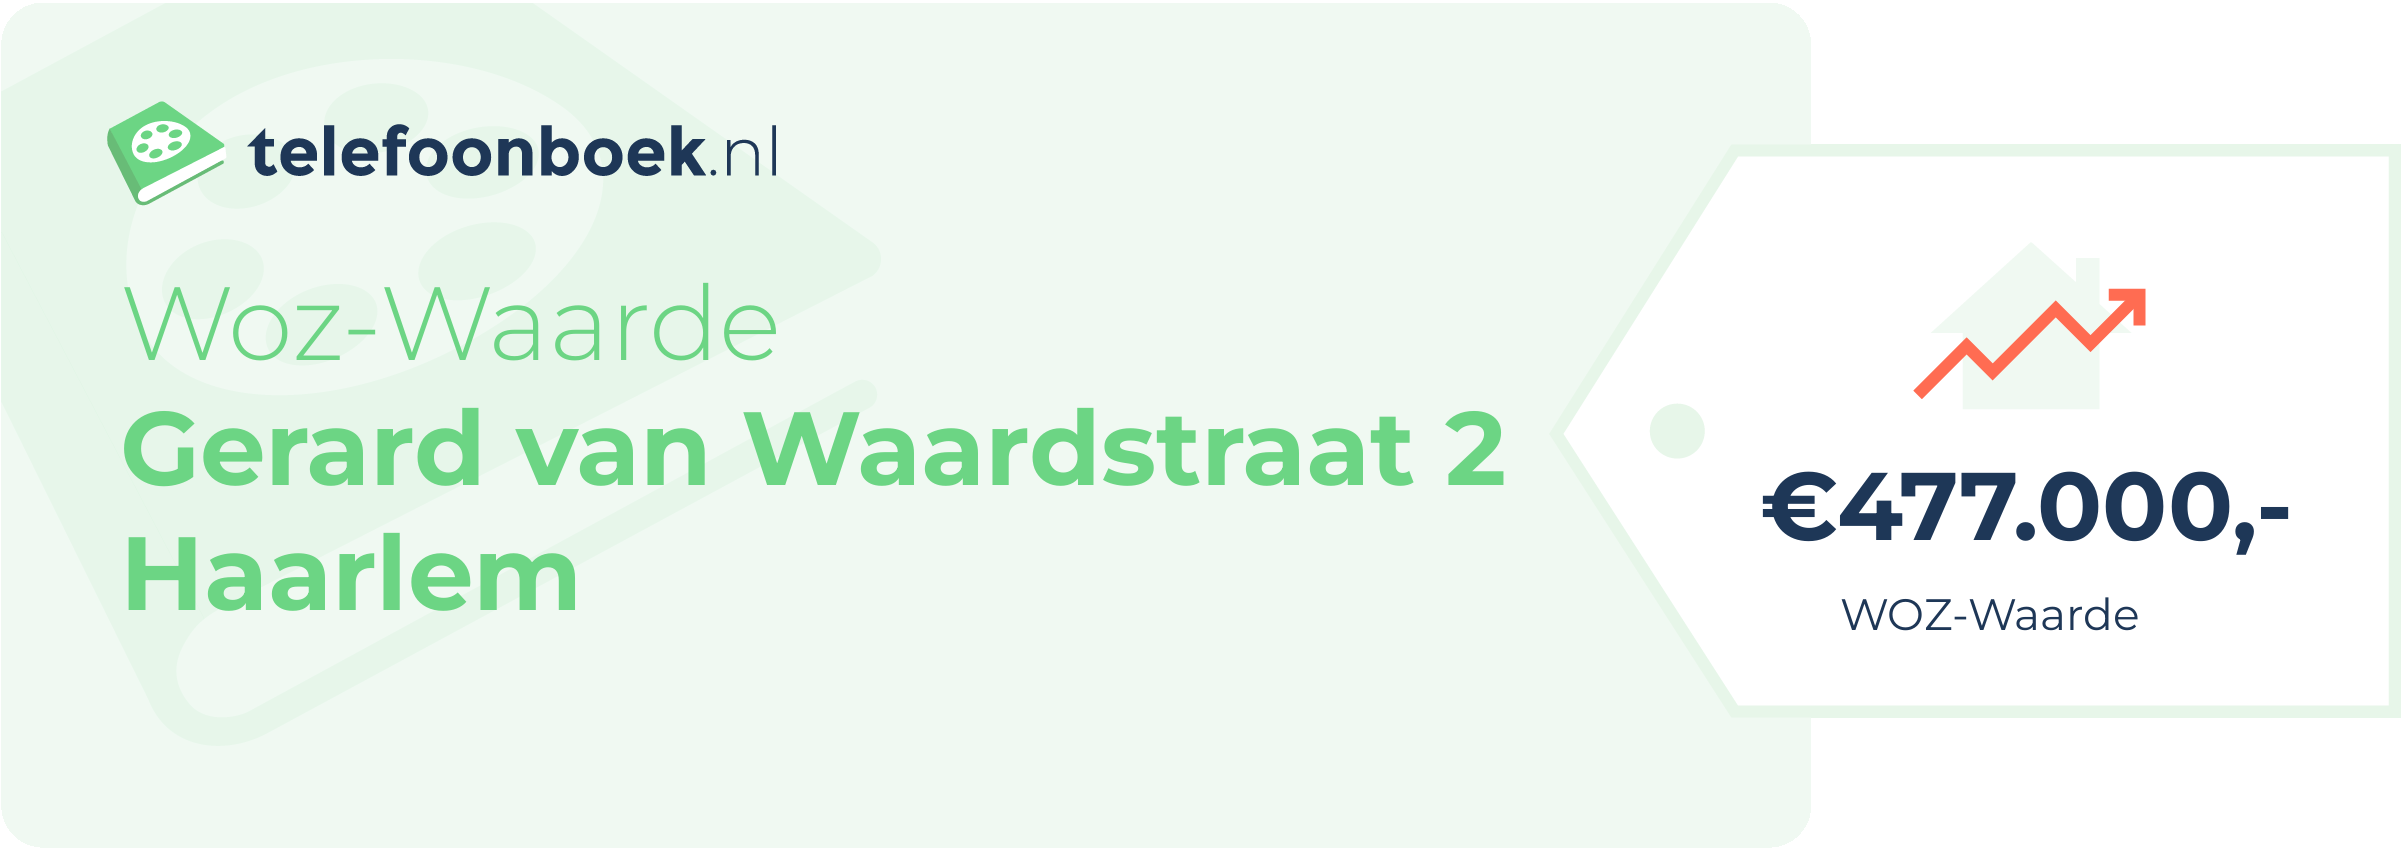 WOZ-waarde Gerard Van Waardstraat 2 Haarlem